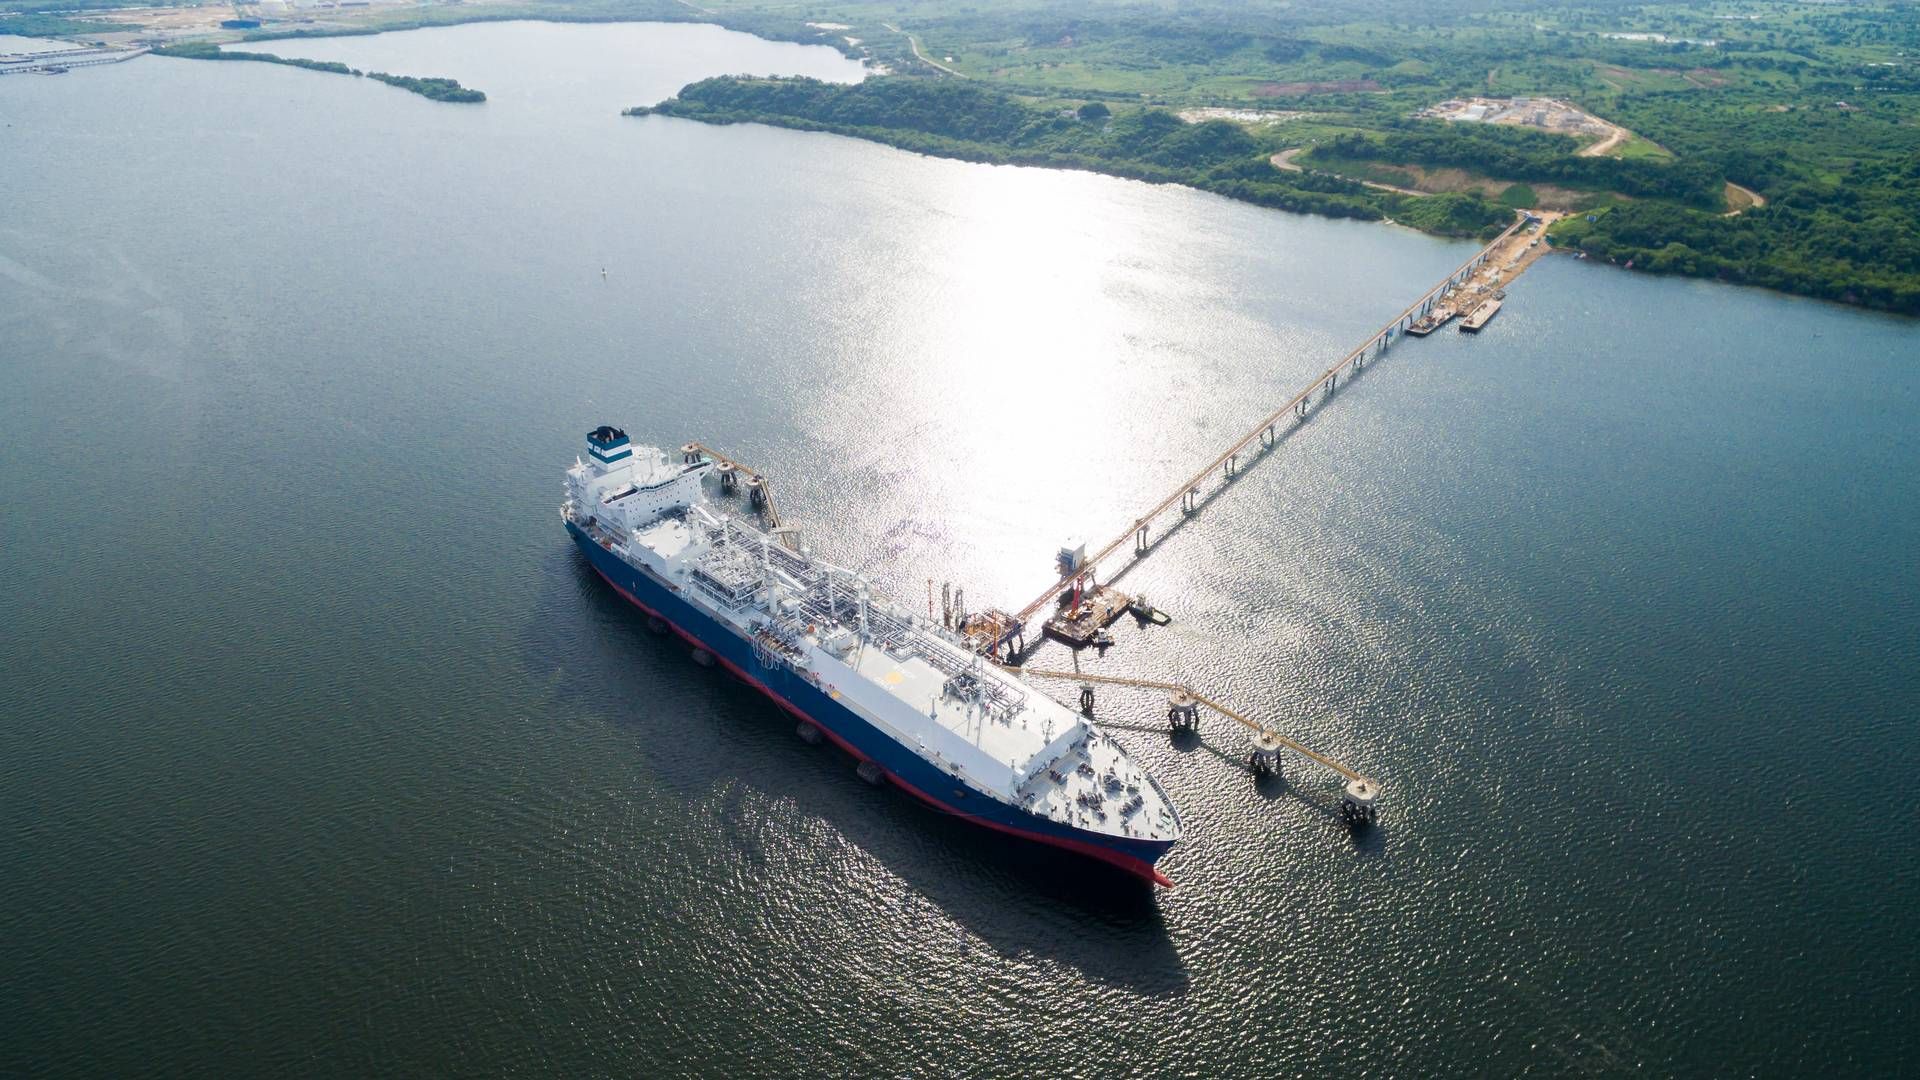 Höegh LNG chartrer FSRU’er ud til energiselskaber, og efterspørgslen efter de flydende terminaler har været stigende i de seneste år blandt andet som følge af Ruslands invasion af Ukraine, der har begrænset Europas import af naturgas fra Rusland markant. | Foto: Höegh LNG